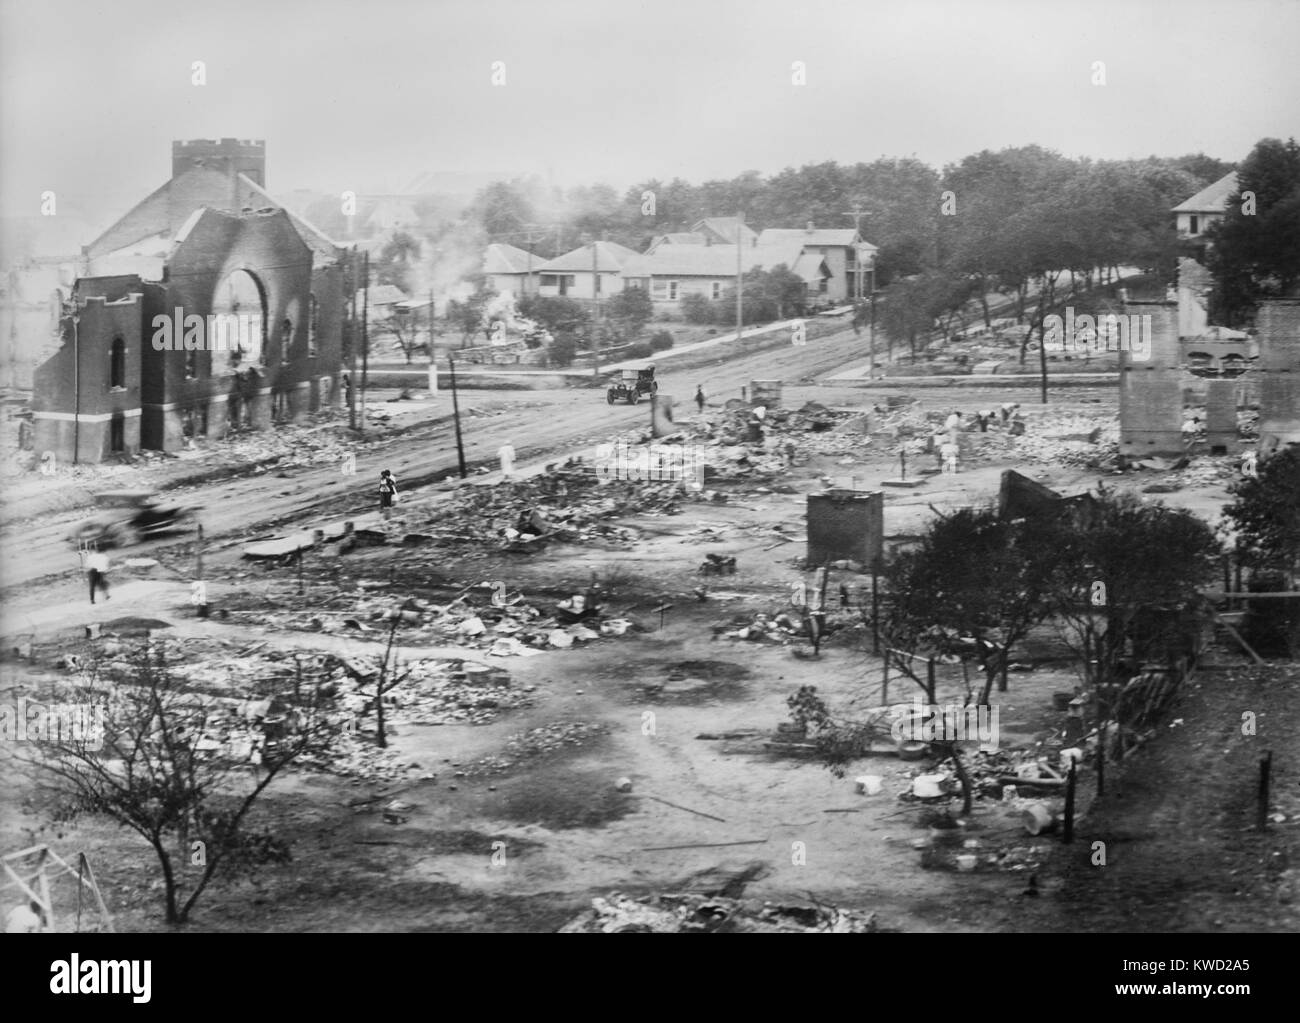 Parte del distretto bruciato nel 1917 Tulsa gara tumulti, incluse le rovine di Mt. Sion chiesa battista. Tre persone a piedi attraverso la devastazione (BSLOC 2017 20 80) Foto Stock